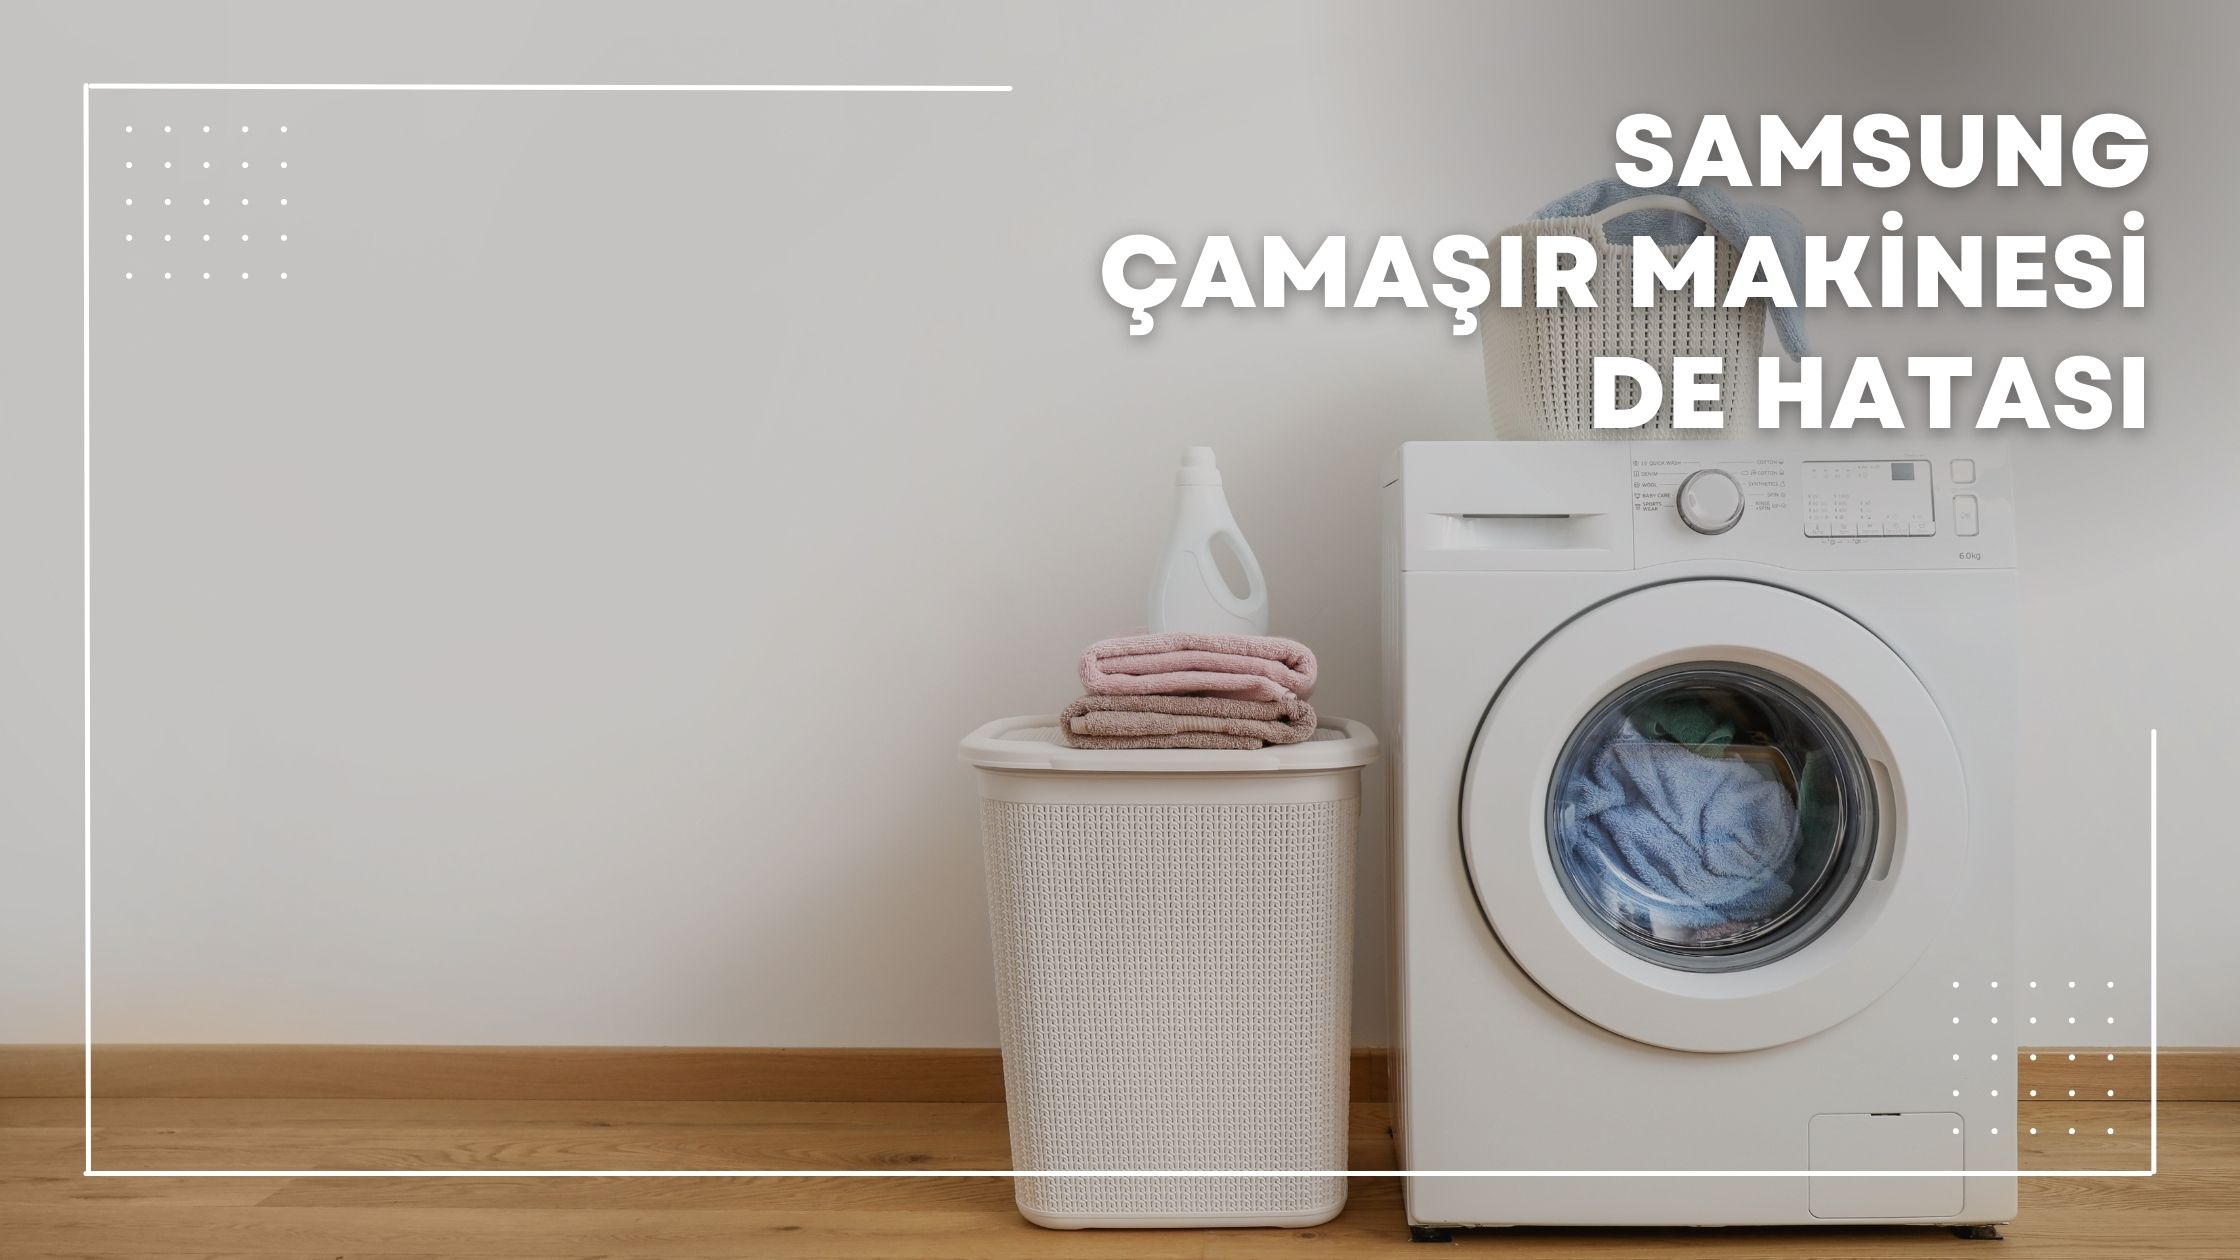 Samsung Çamaşır Makinesi de Hatası